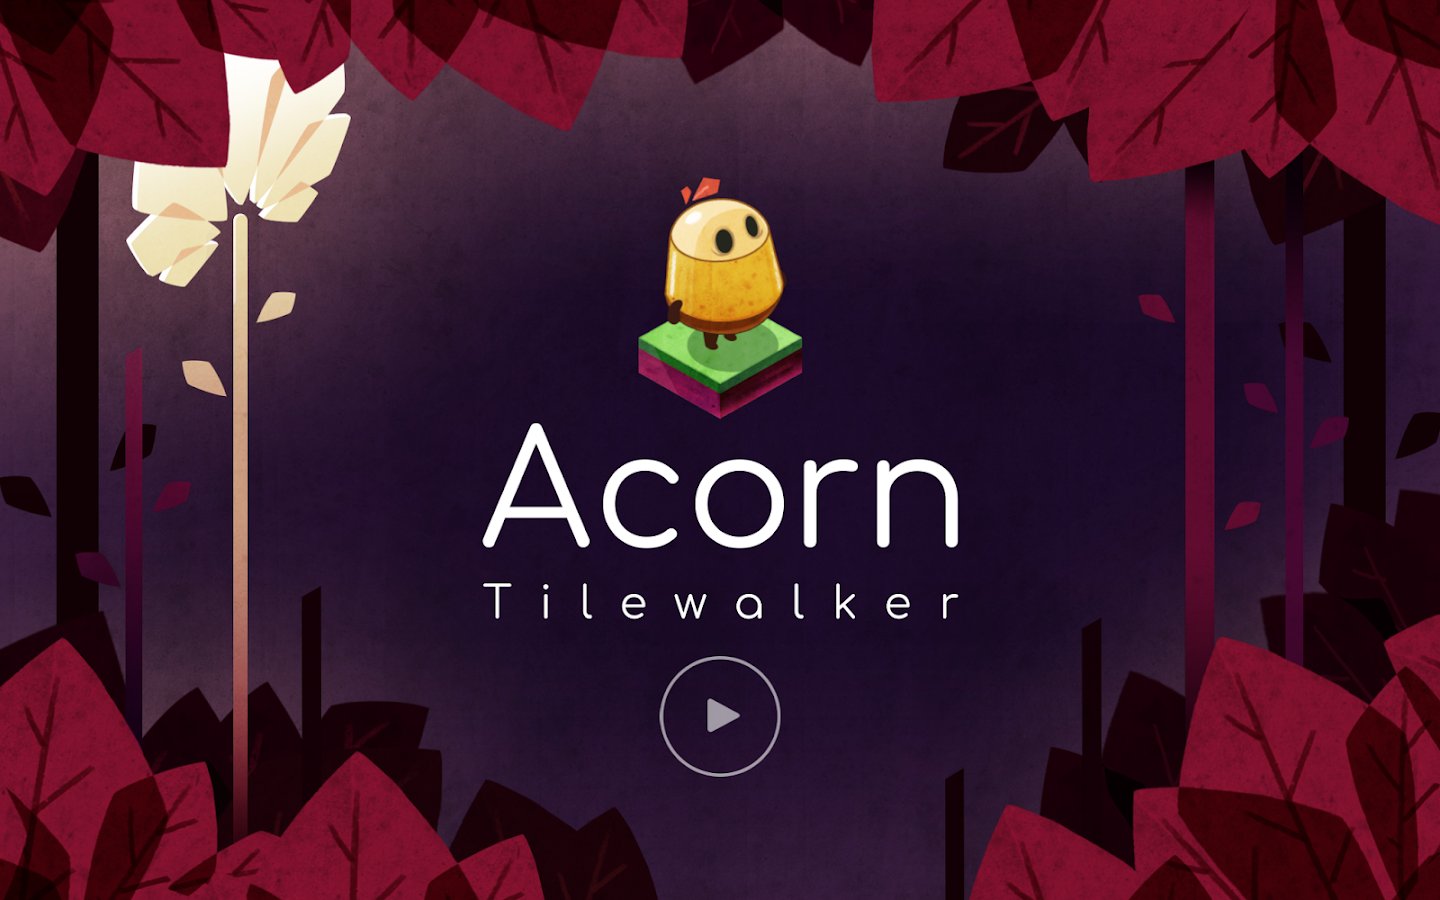 Acorn Tilewalker — Трехмерная логическая головоломка с оригинальным подходом и отличной графикой.